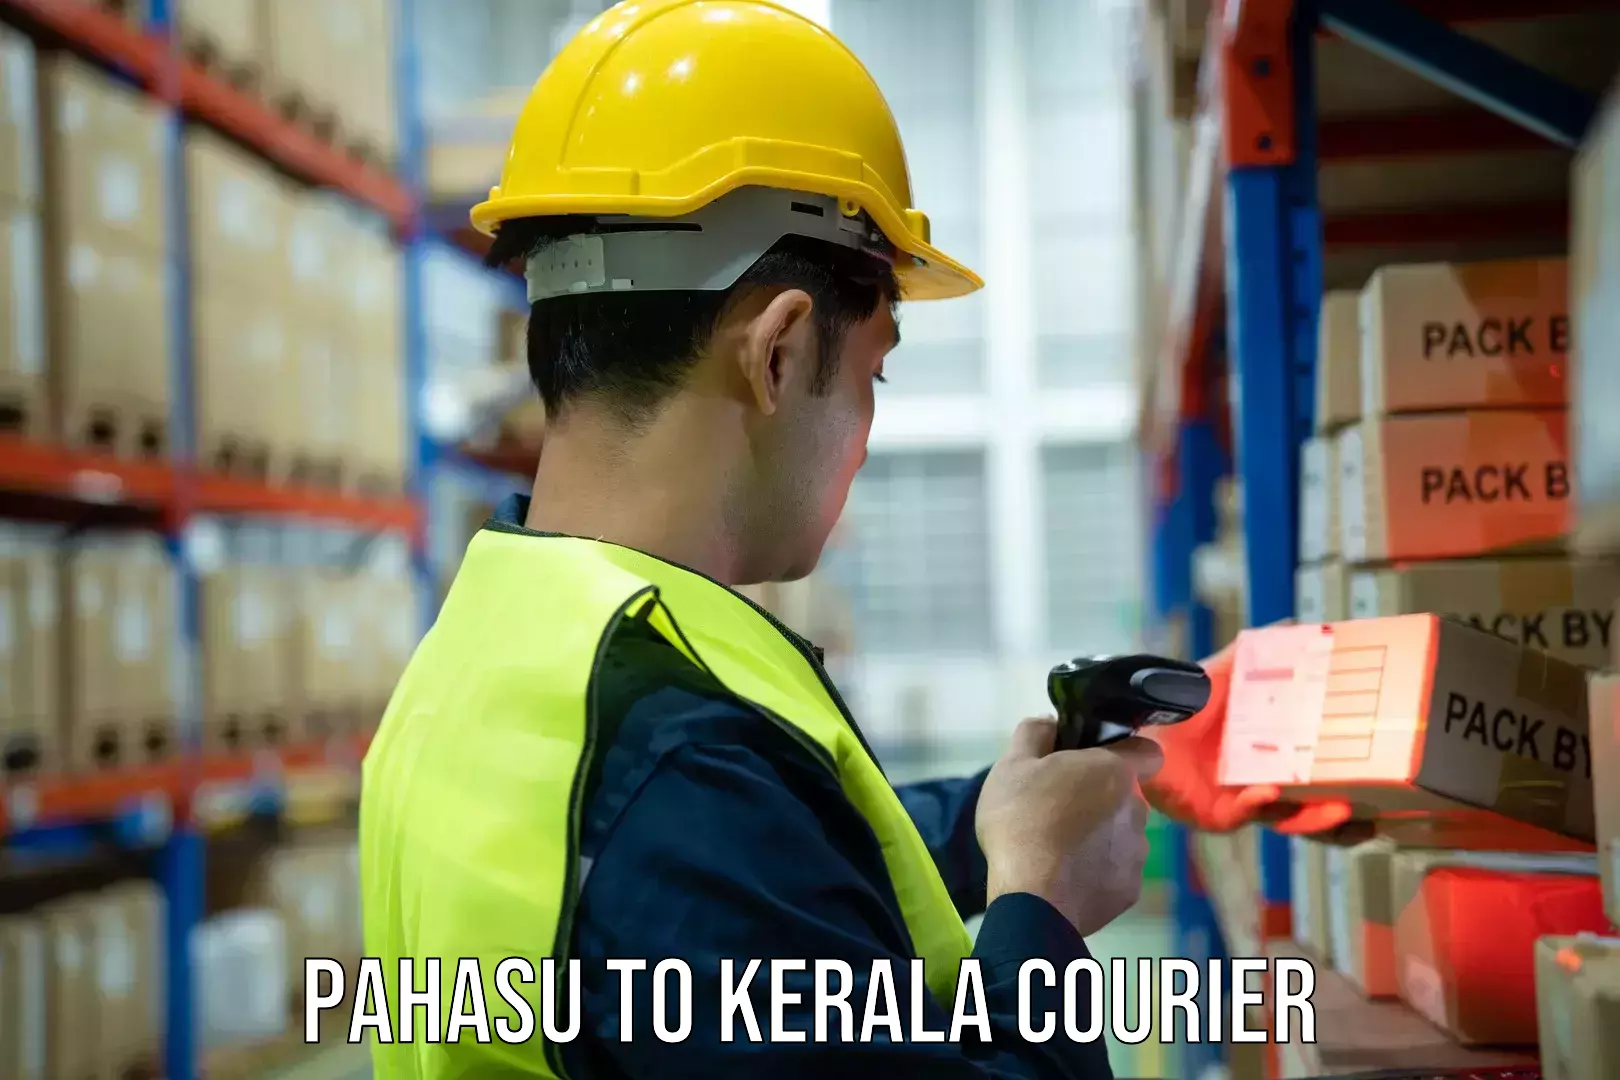 Multi-city courier Pahasu to Kerala